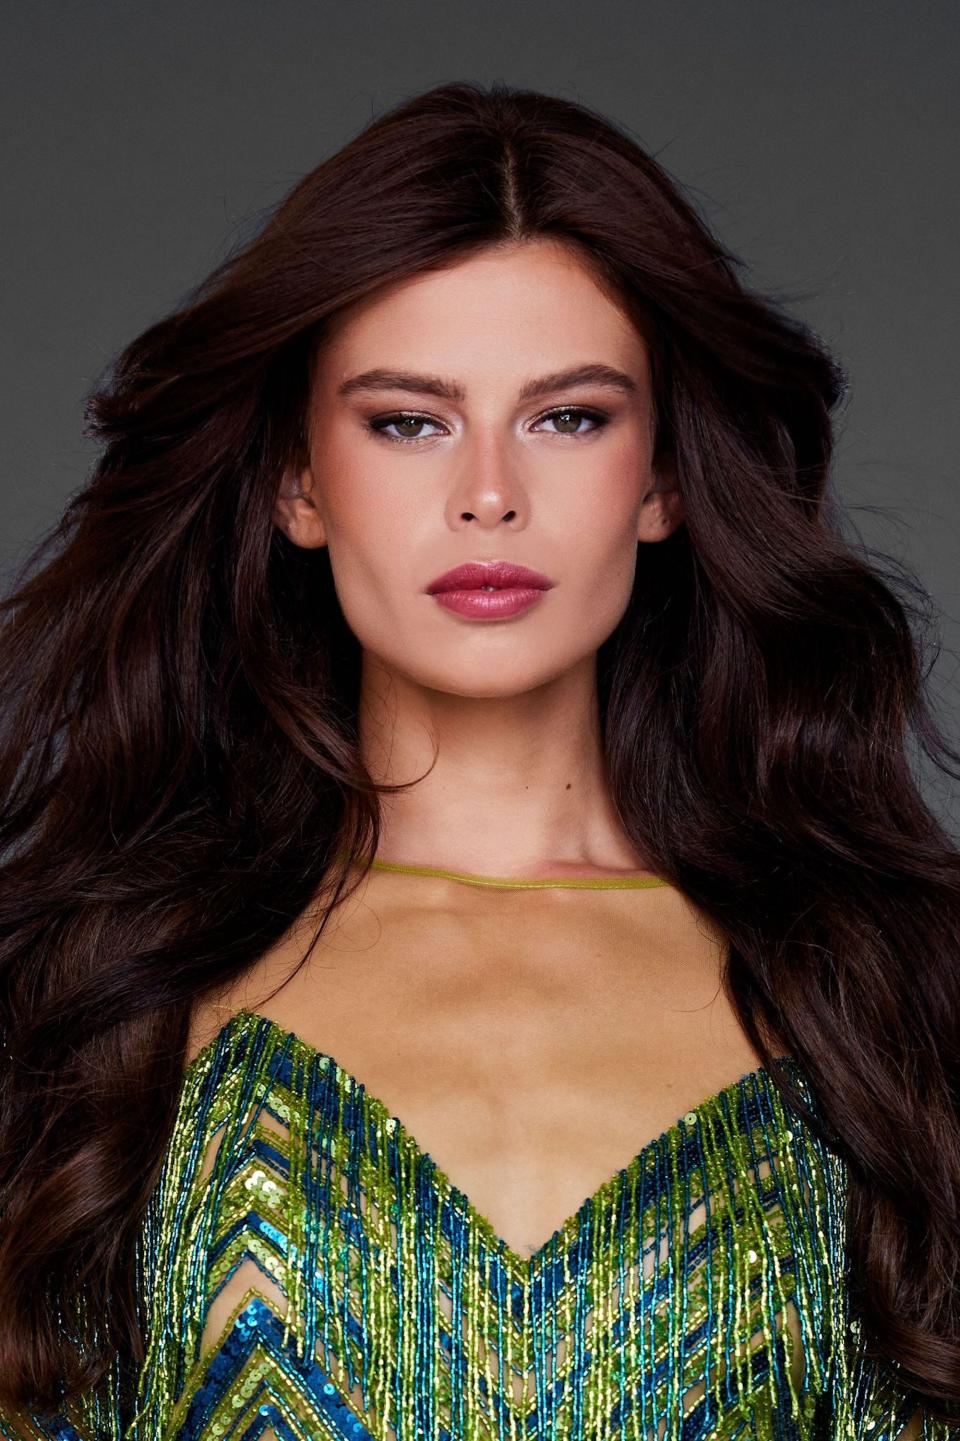 A headshot of Miss Netherlands 2023 Rikkie Kollé.